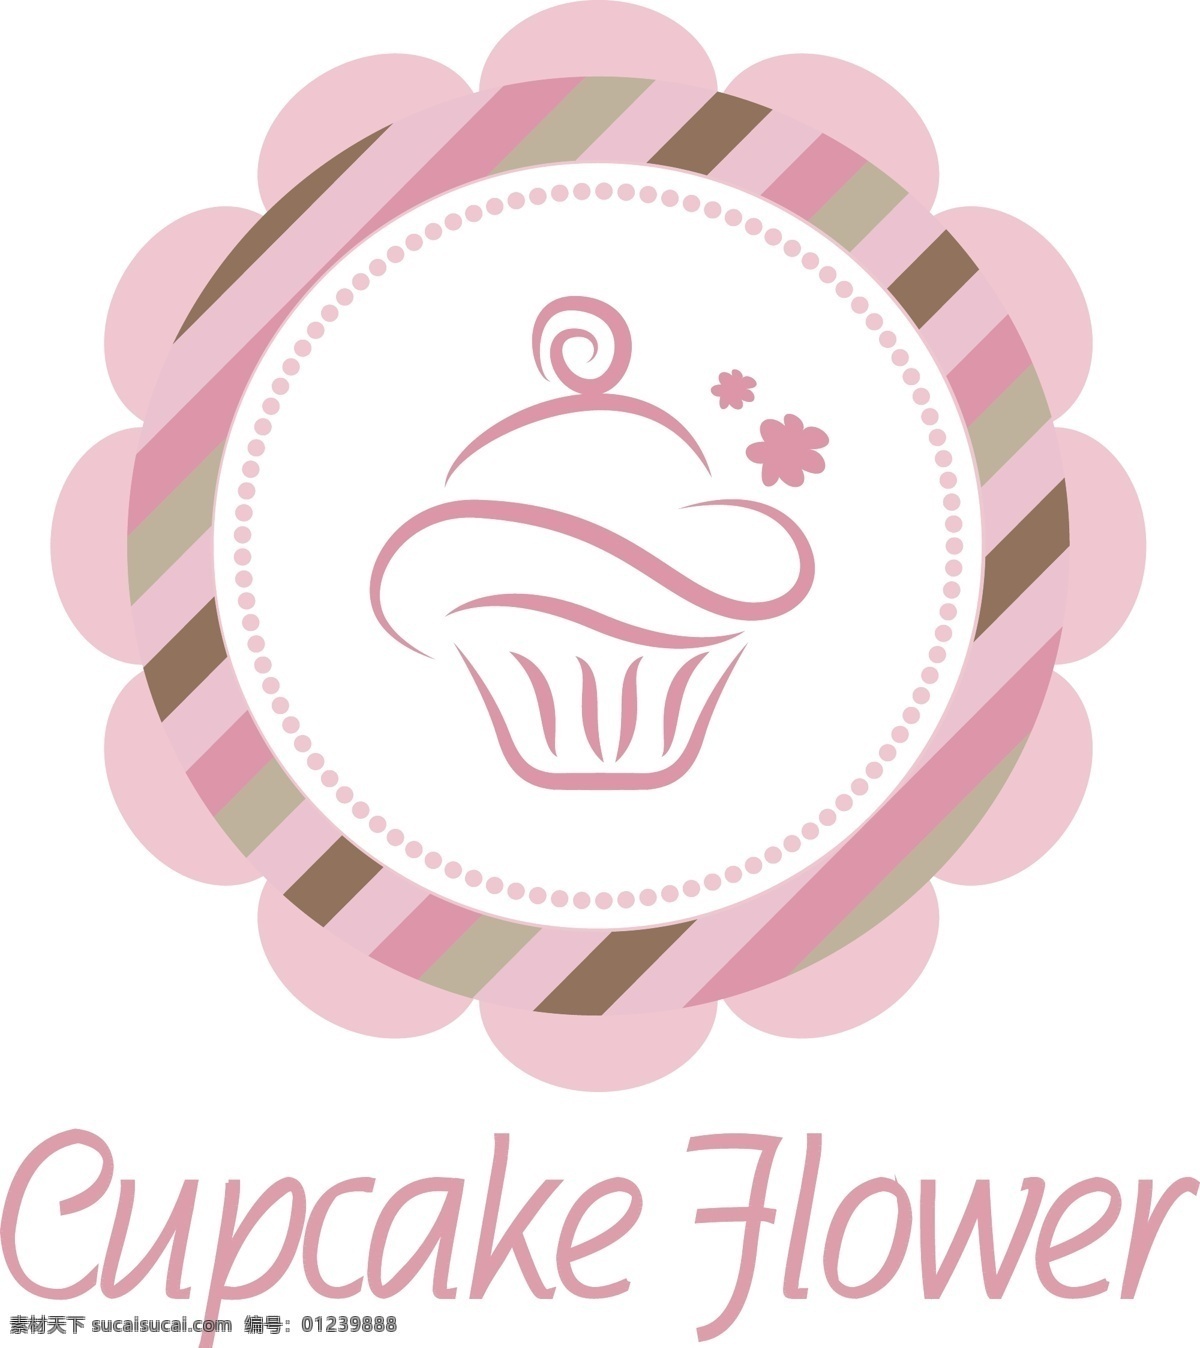 面包店标志 面包店 蛋糕店 粉色 可爱 标志 logo 烘焙 花环 浪漫 标志图标 公共标识标志